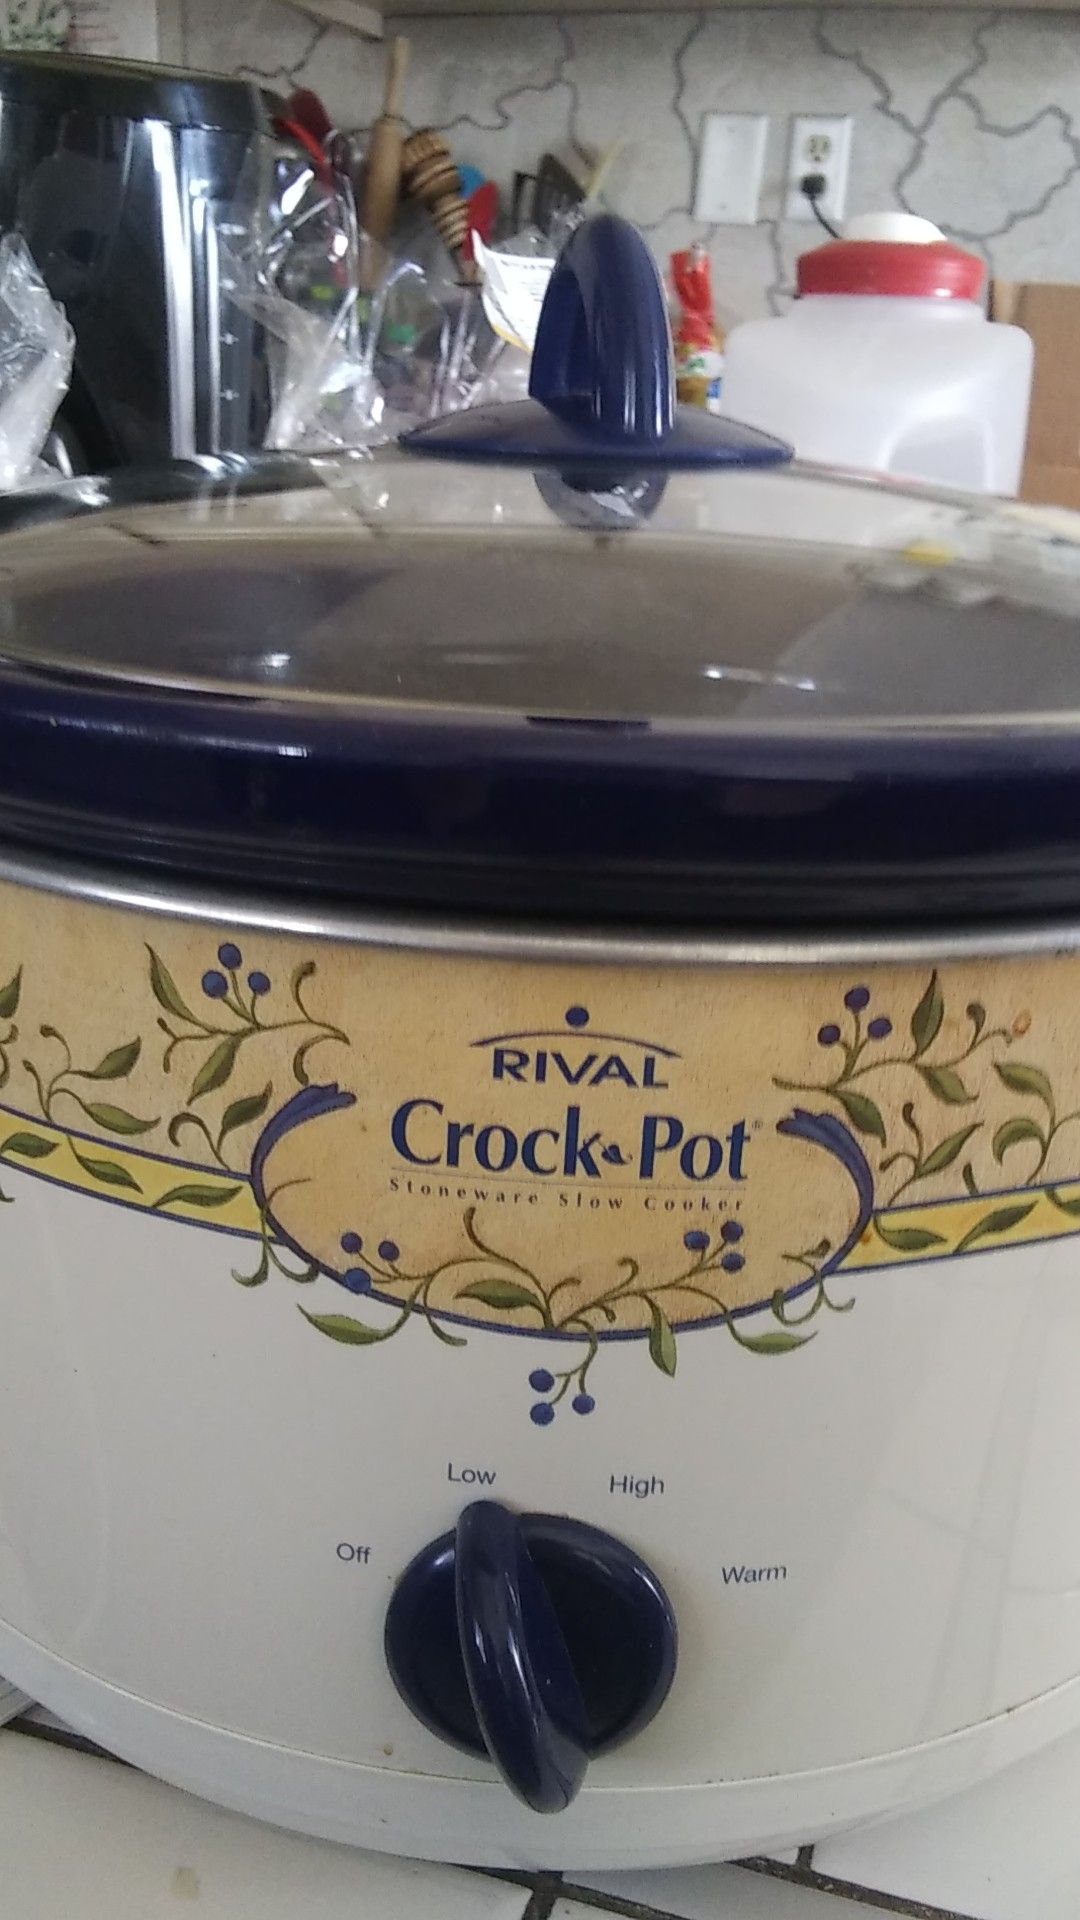 Crop pot slow cooker